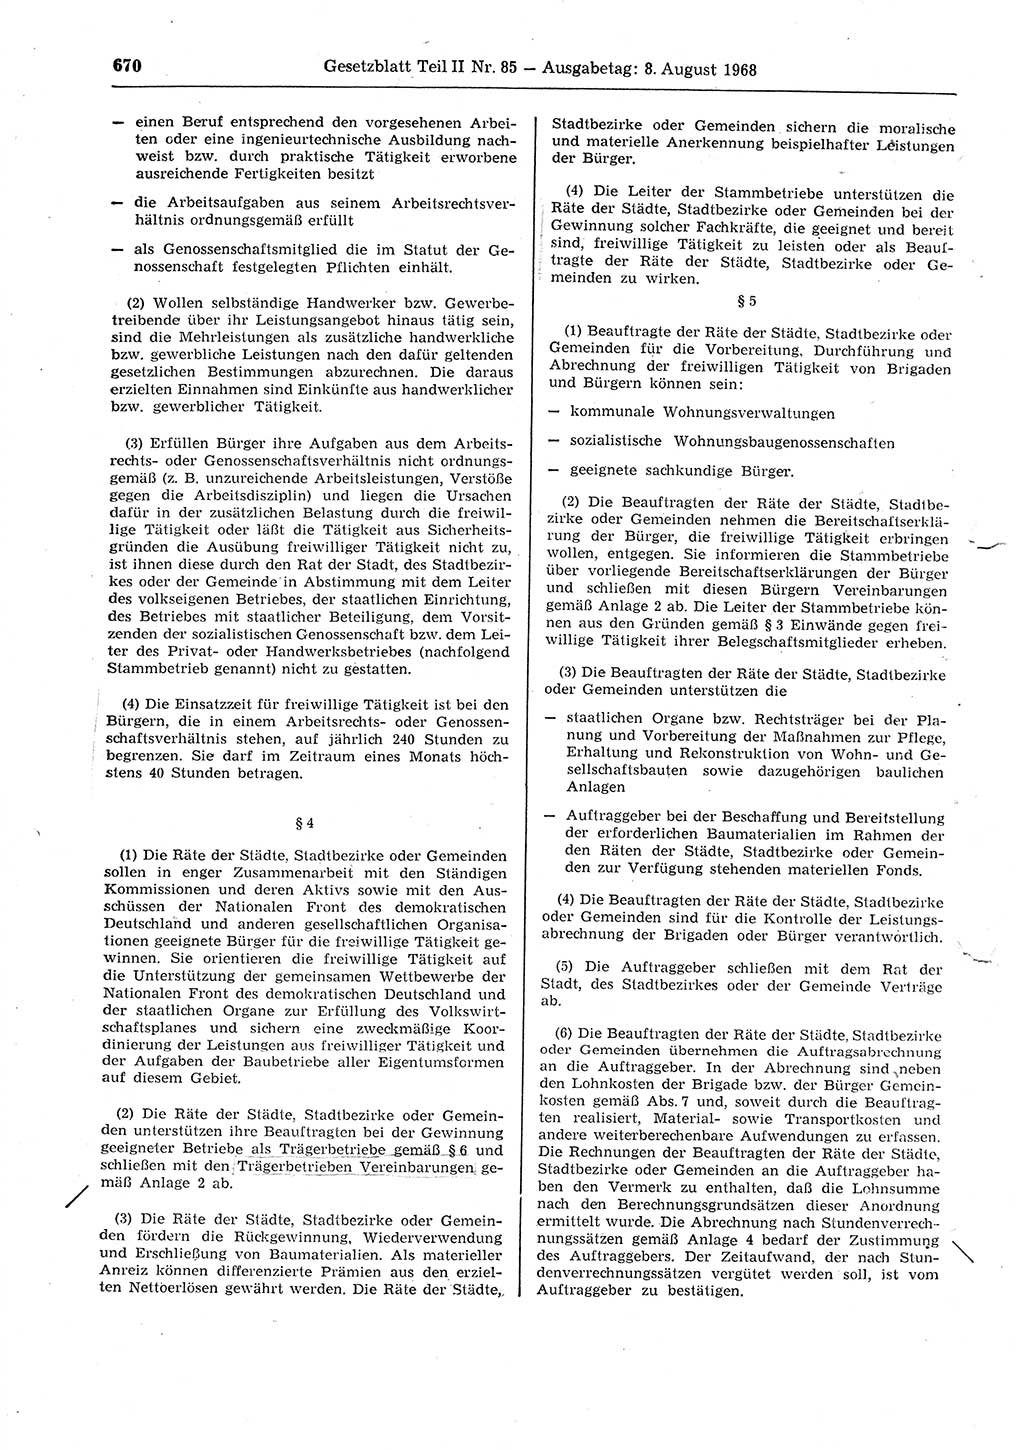 Gesetzblatt (GBl.) der Deutschen Demokratischen Republik (DDR) Teil ⅠⅠ 1968, Seite 670 (GBl. DDR ⅠⅠ 1968, S. 670)